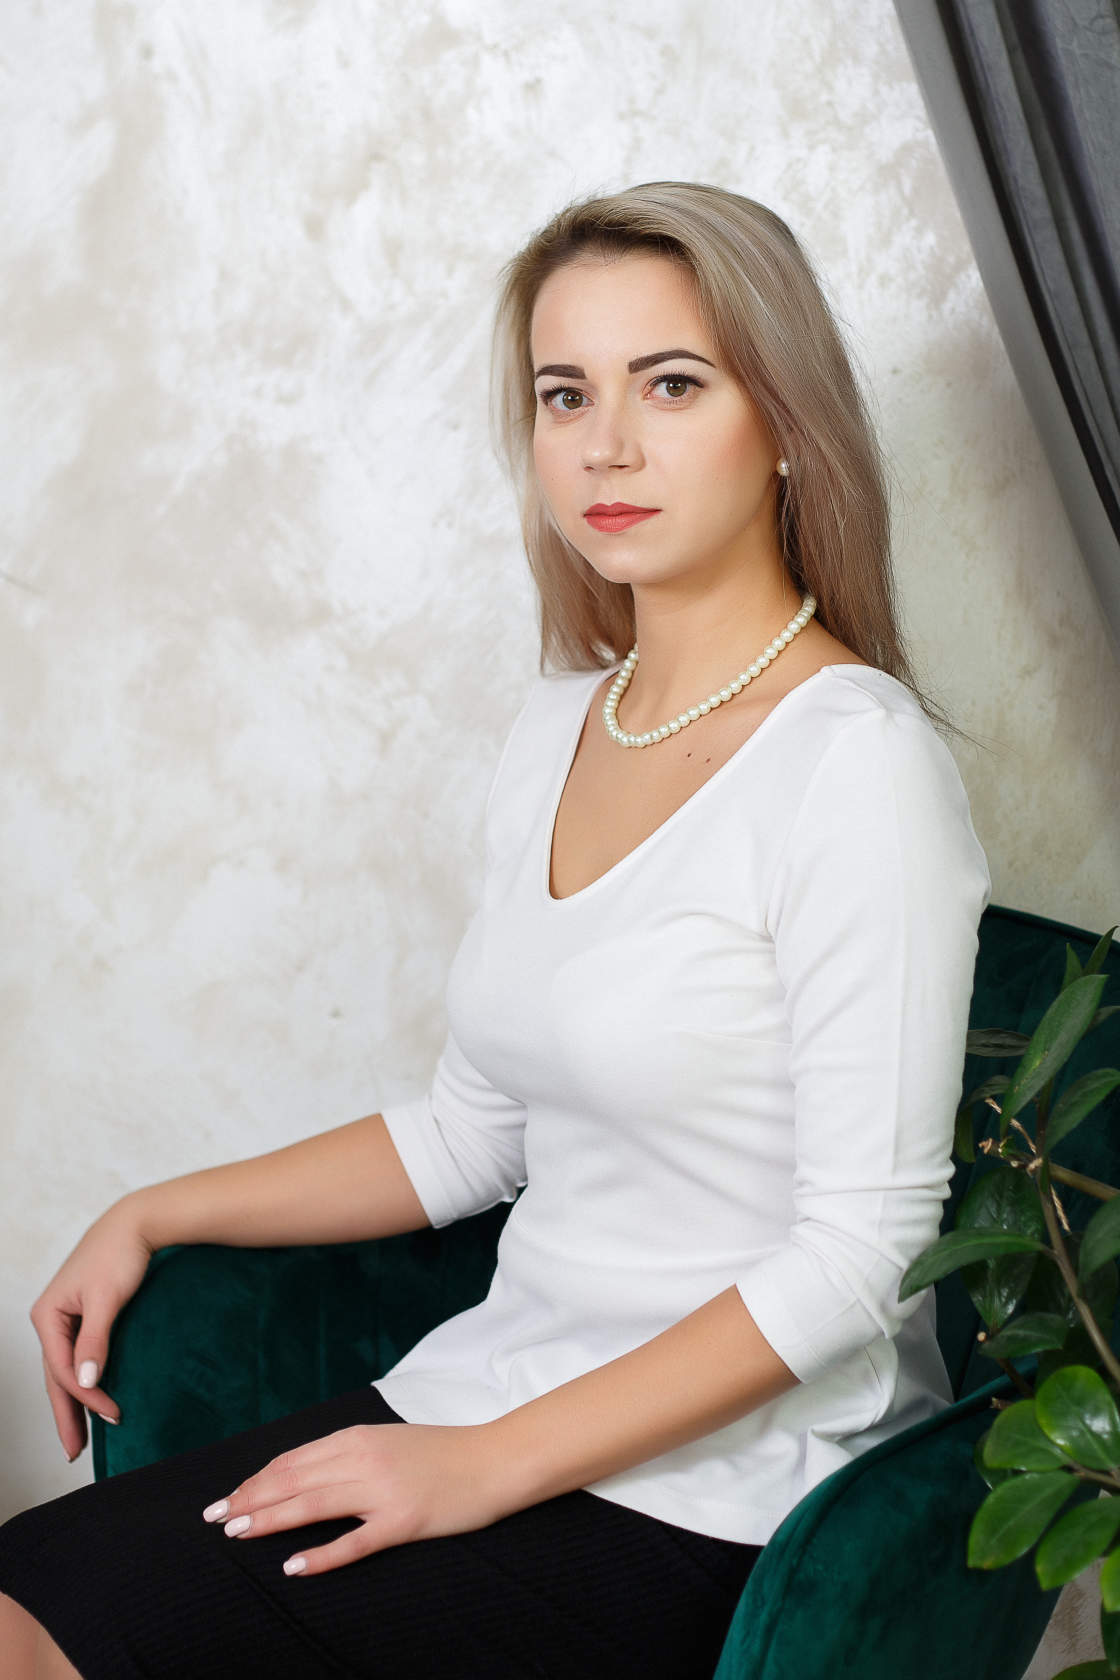 Ульяновский психолог рассказал, как справиться с сексуальными проблемами |  Новости Ульяновска. Смотреть онлайн